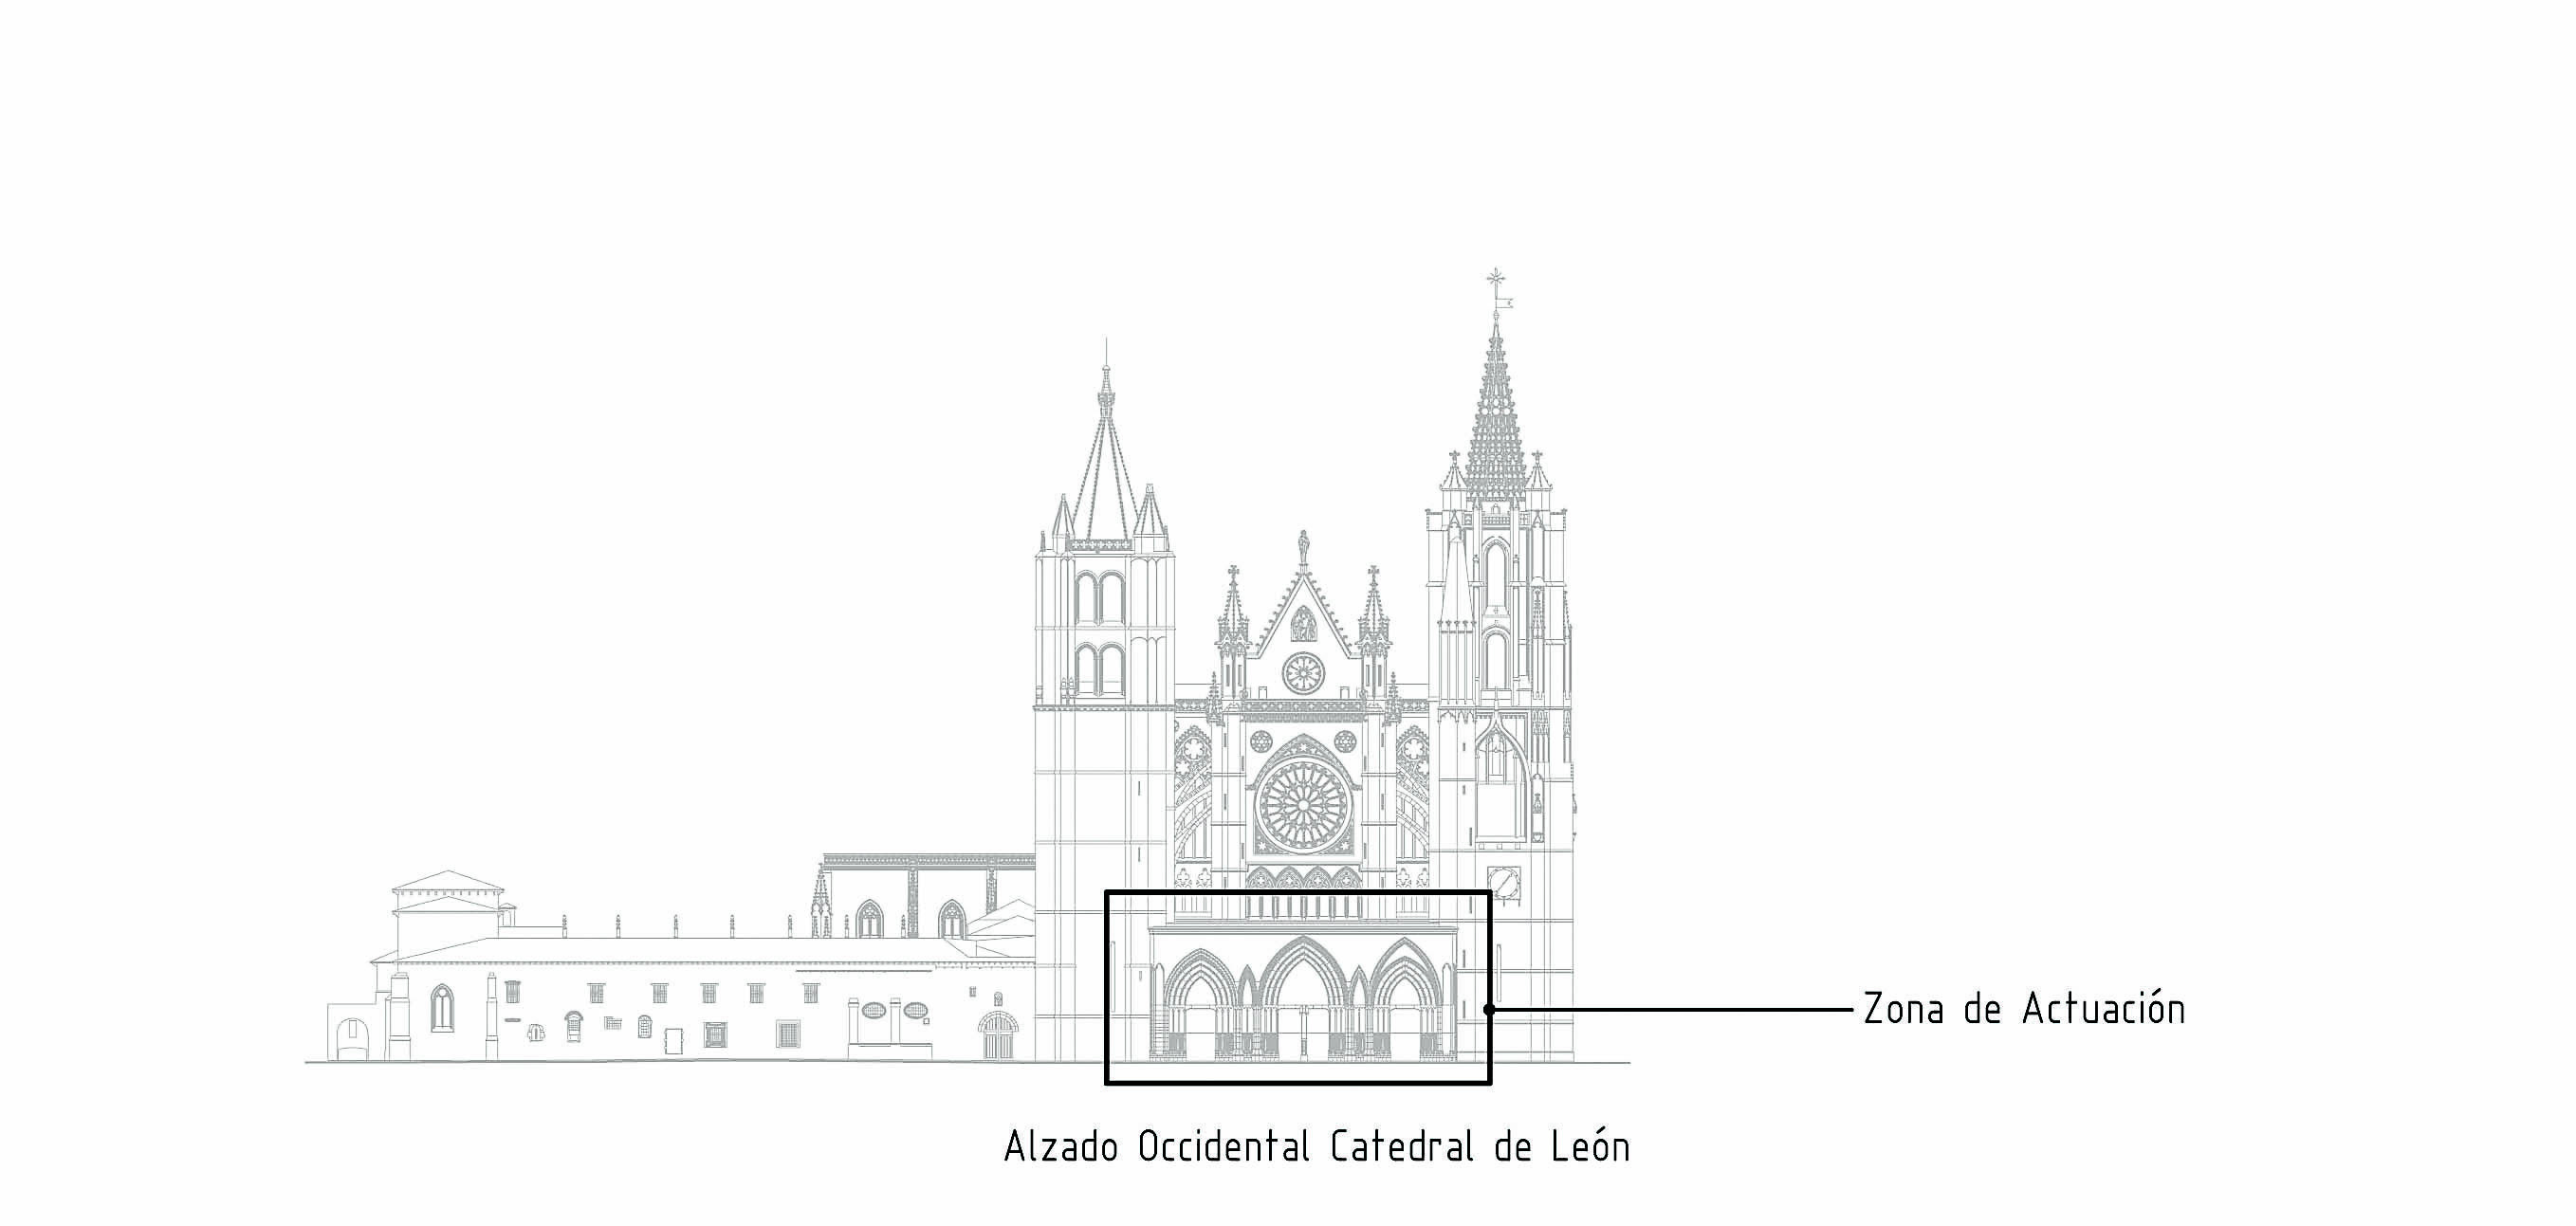  Tras una licitación desierta, el Ayuntamiento de León podrá adjudicar en breve el contrato para realizar proyecciones artísticas sobre la Catedral. | L.N.C.